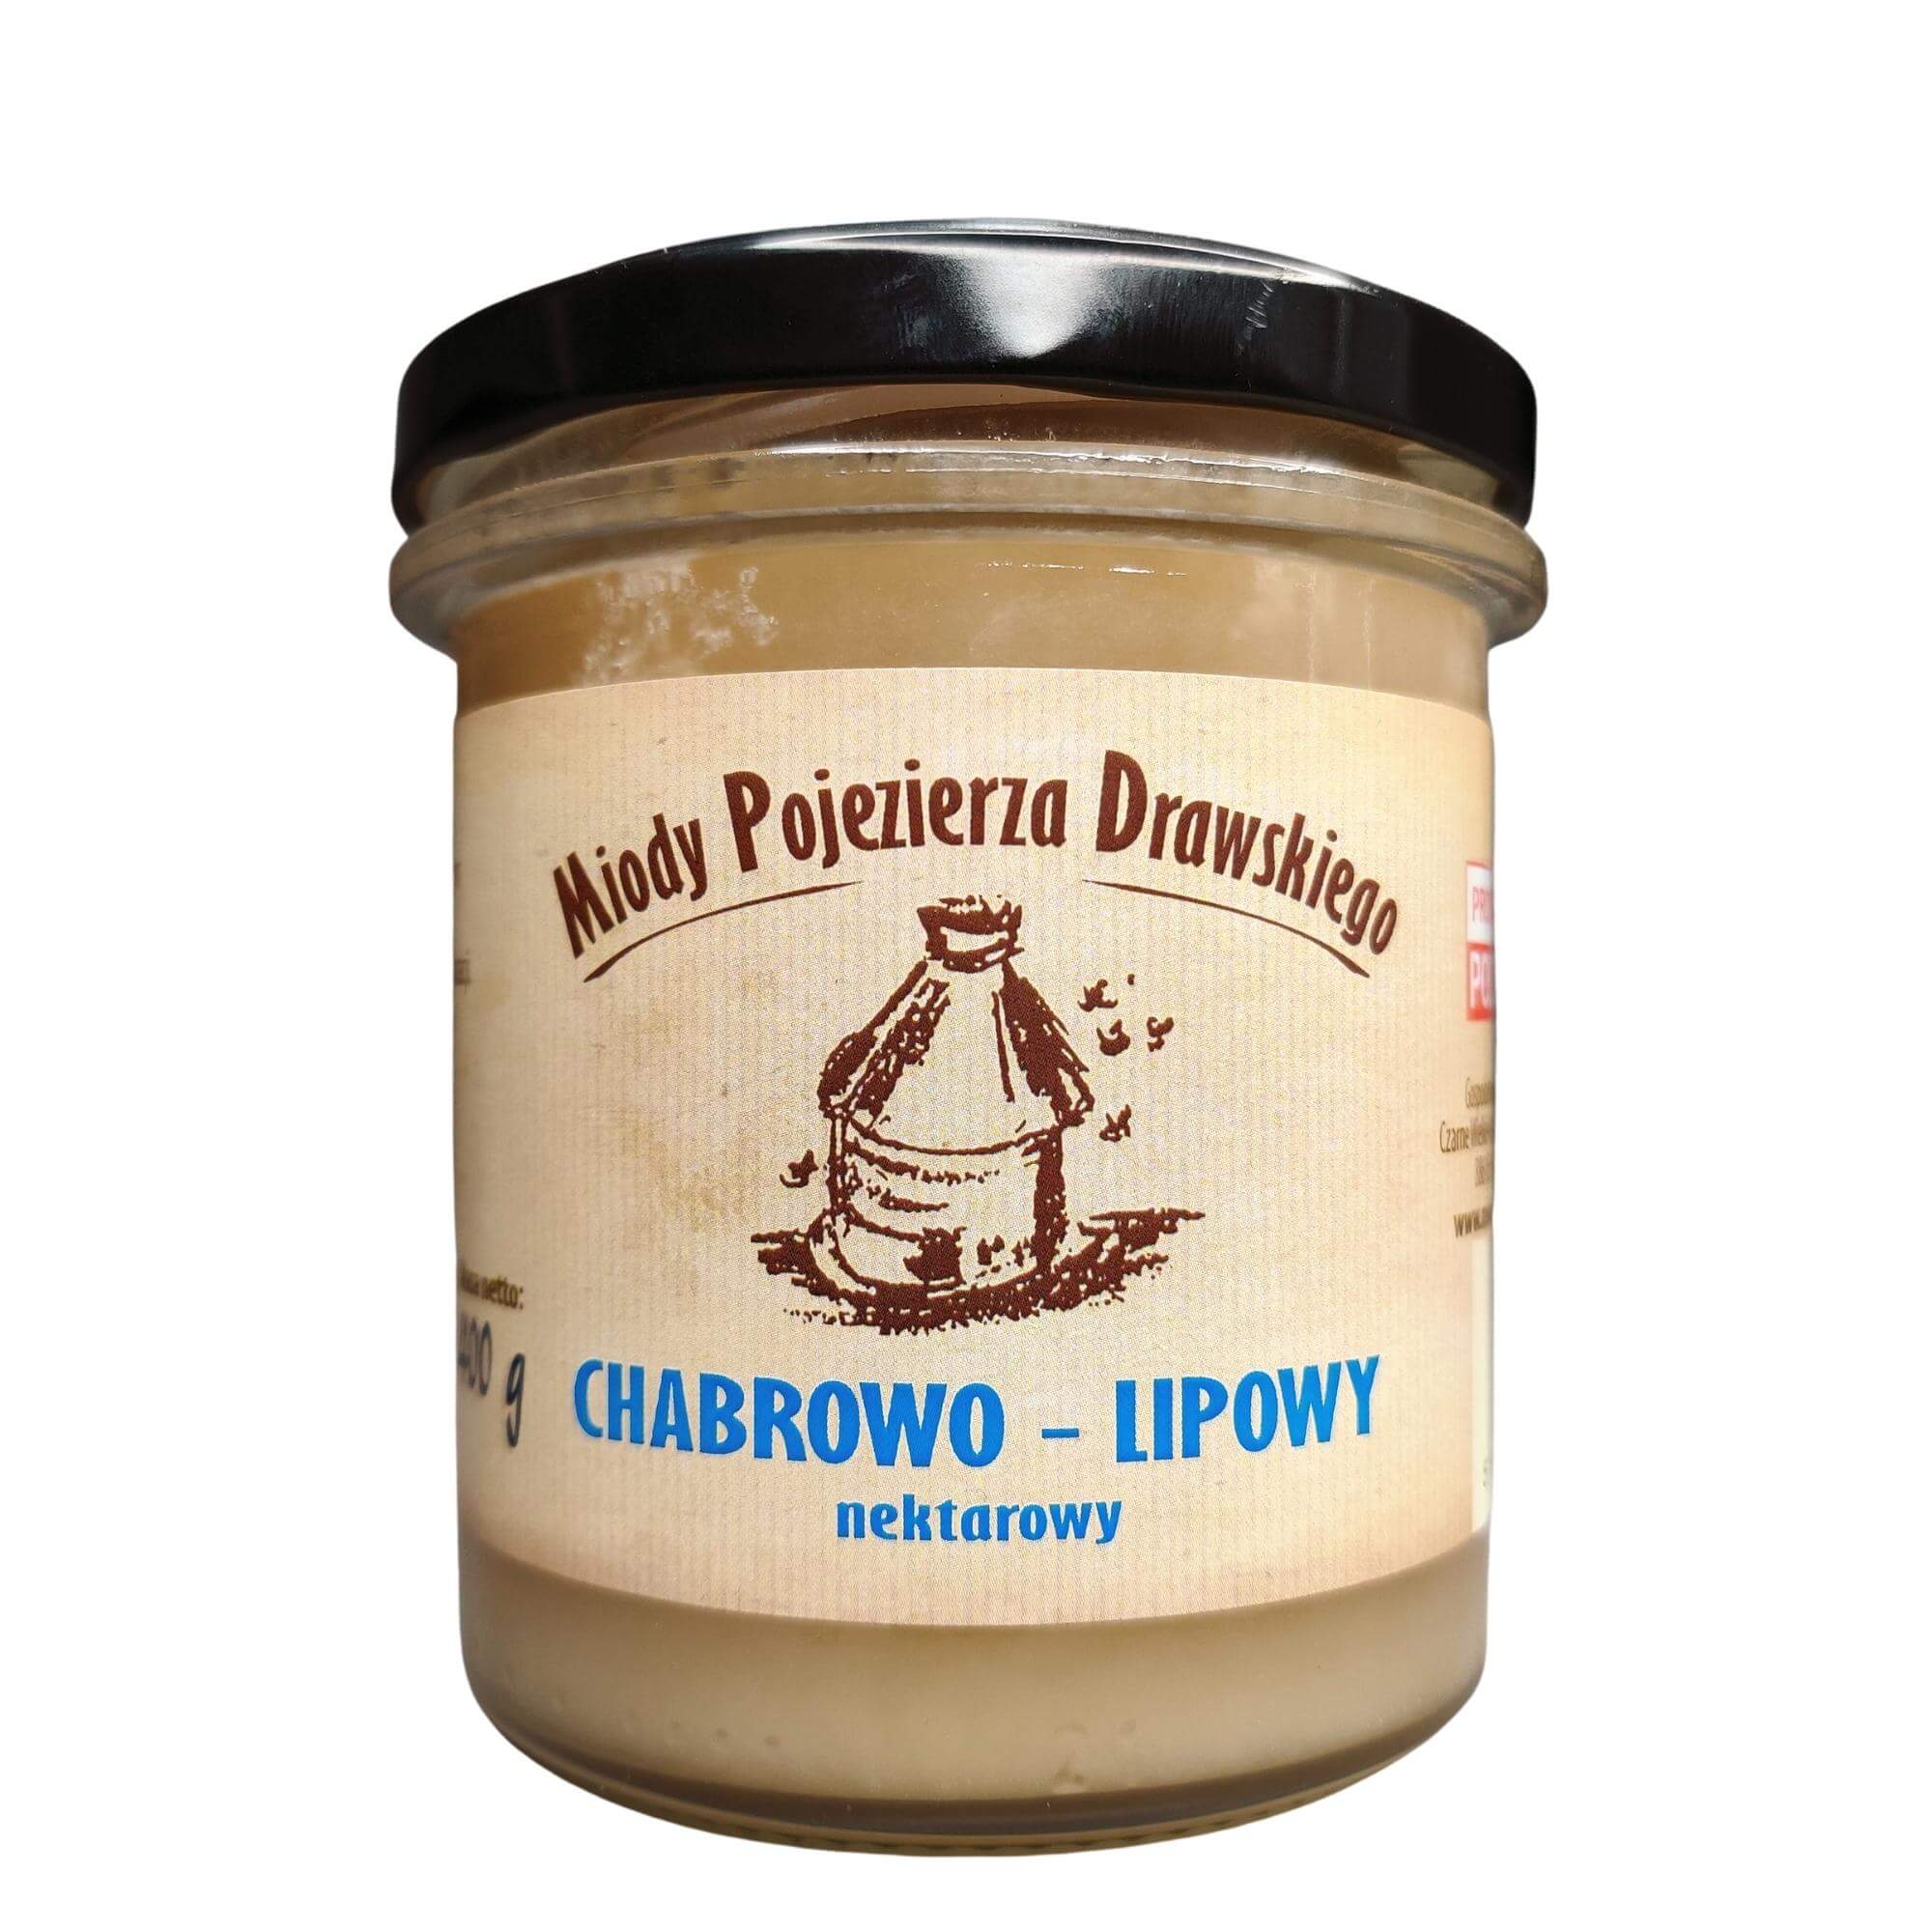 Miód chabrowo-lipowy 400 g - Miody Pojezierza Drawskiego